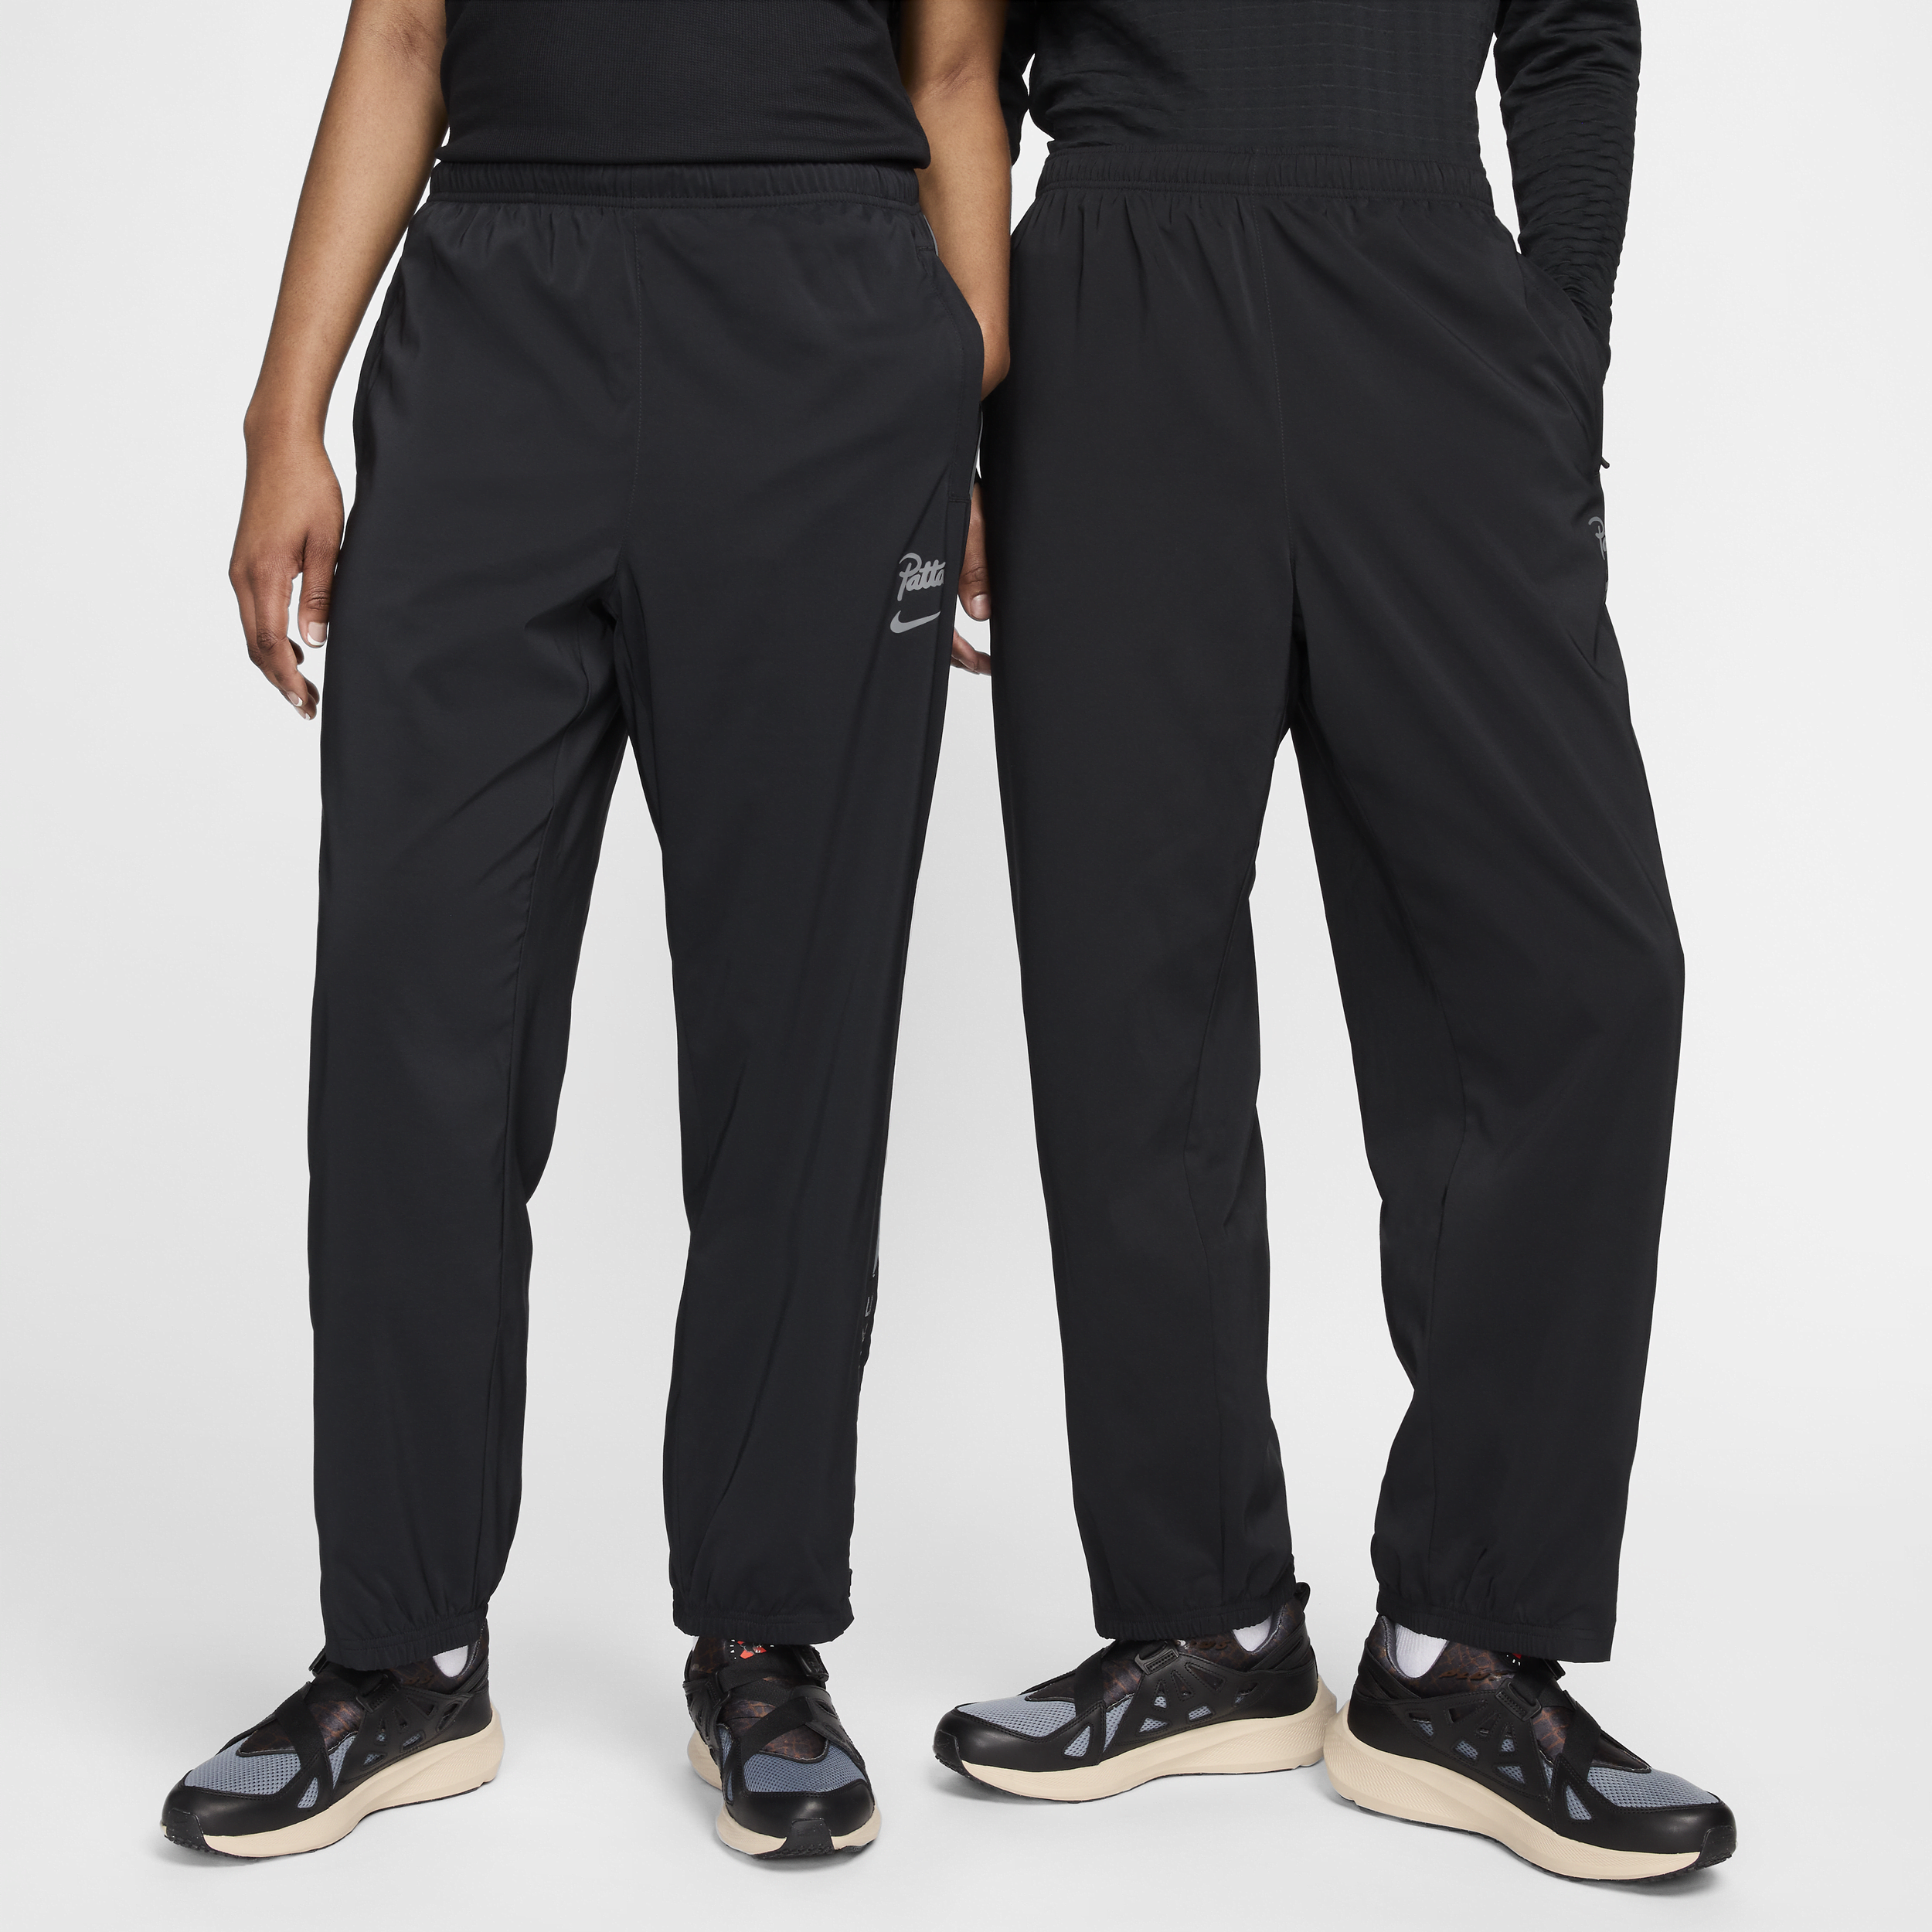 Nike x Patta Running Team trainingsbroek voor heren Zwart